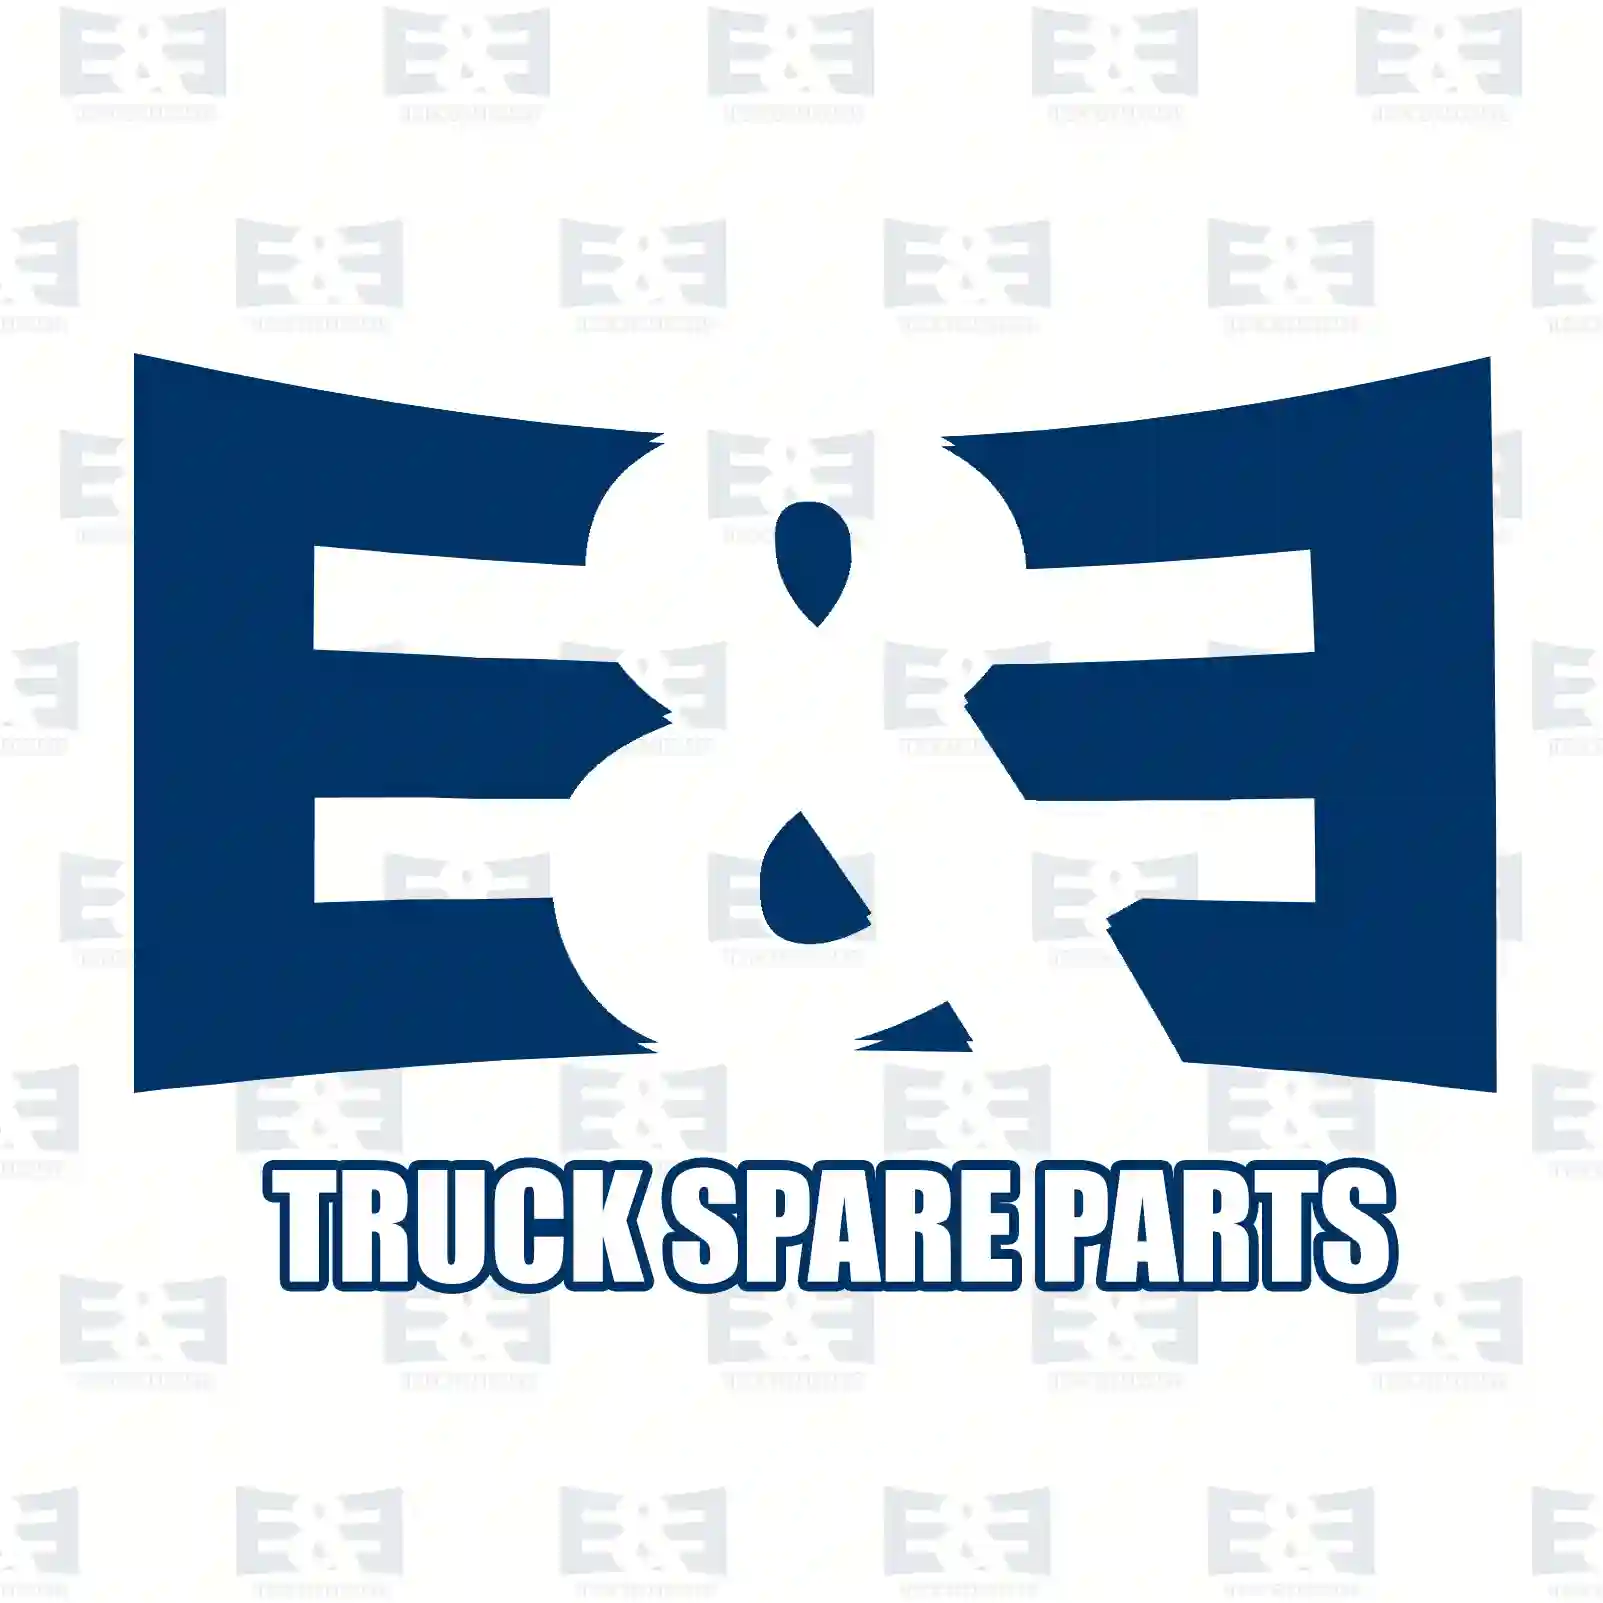 Synchronizer ring, 2E2279394, 1360740, 81324200241, 81324200280 ||  2E2279394 E&E Truck Spare Parts | Truck Spare Parts, Auotomotive Spare Parts Synchronizer ring, 2E2279394, 1360740, 81324200241, 81324200280 ||  2E2279394 E&E Truck Spare Parts | Truck Spare Parts, Auotomotive Spare Parts